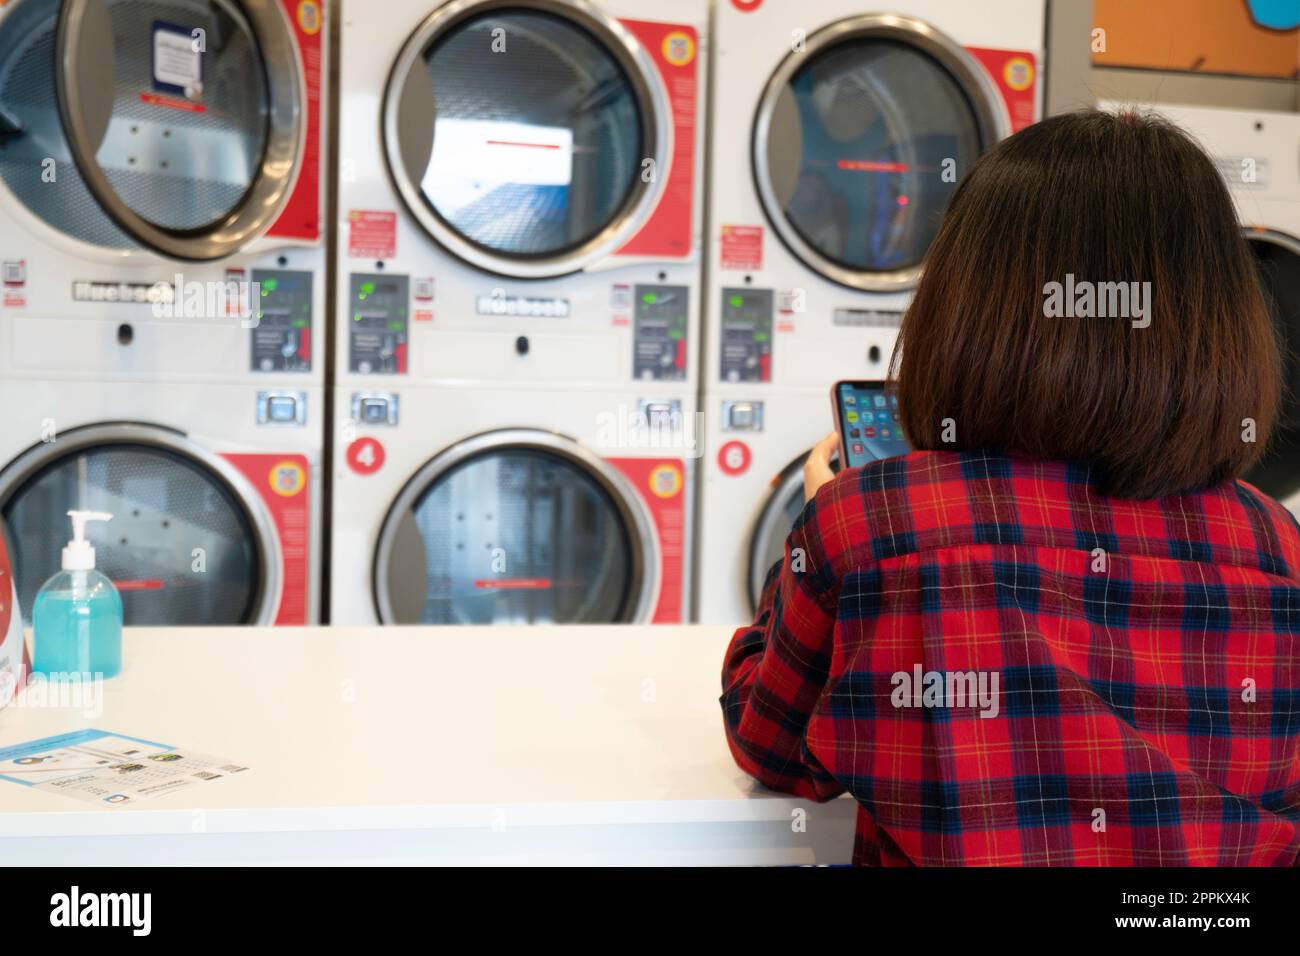 Vista posteriore della donna seduta con telefono cellulare in attesa di essere lavata in lavatrice automatica presso il negozio di lavanderia automatica. Lavatrice industriale nella lavanderia a gettoni. Foto Stock